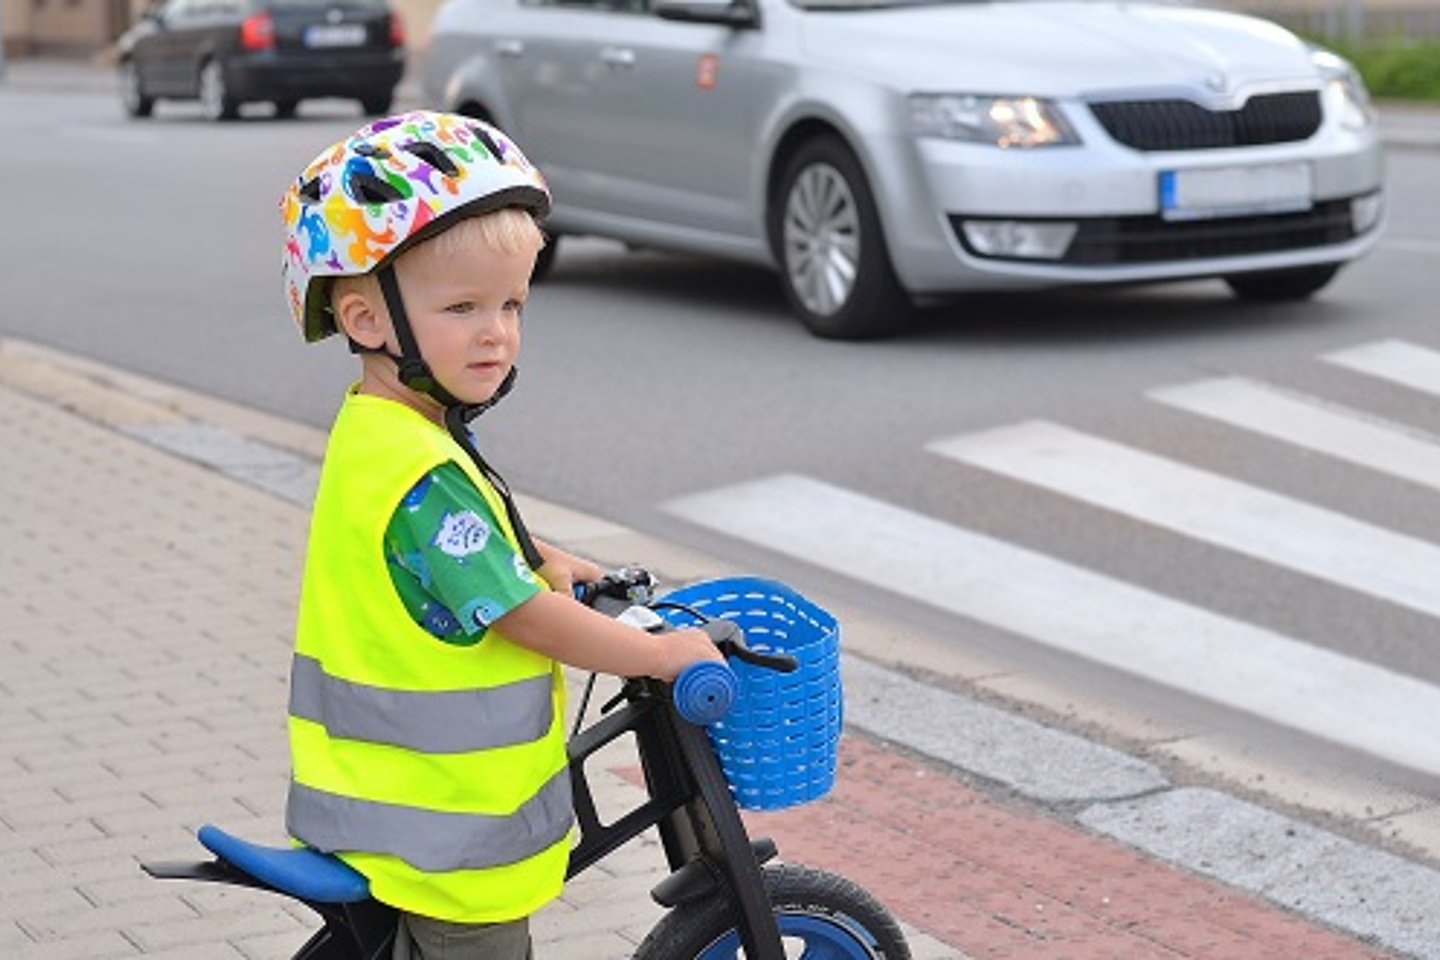 Vorschulkind mit Fahrradhelm und Fahrrad vor Zebrastreifen und Auto